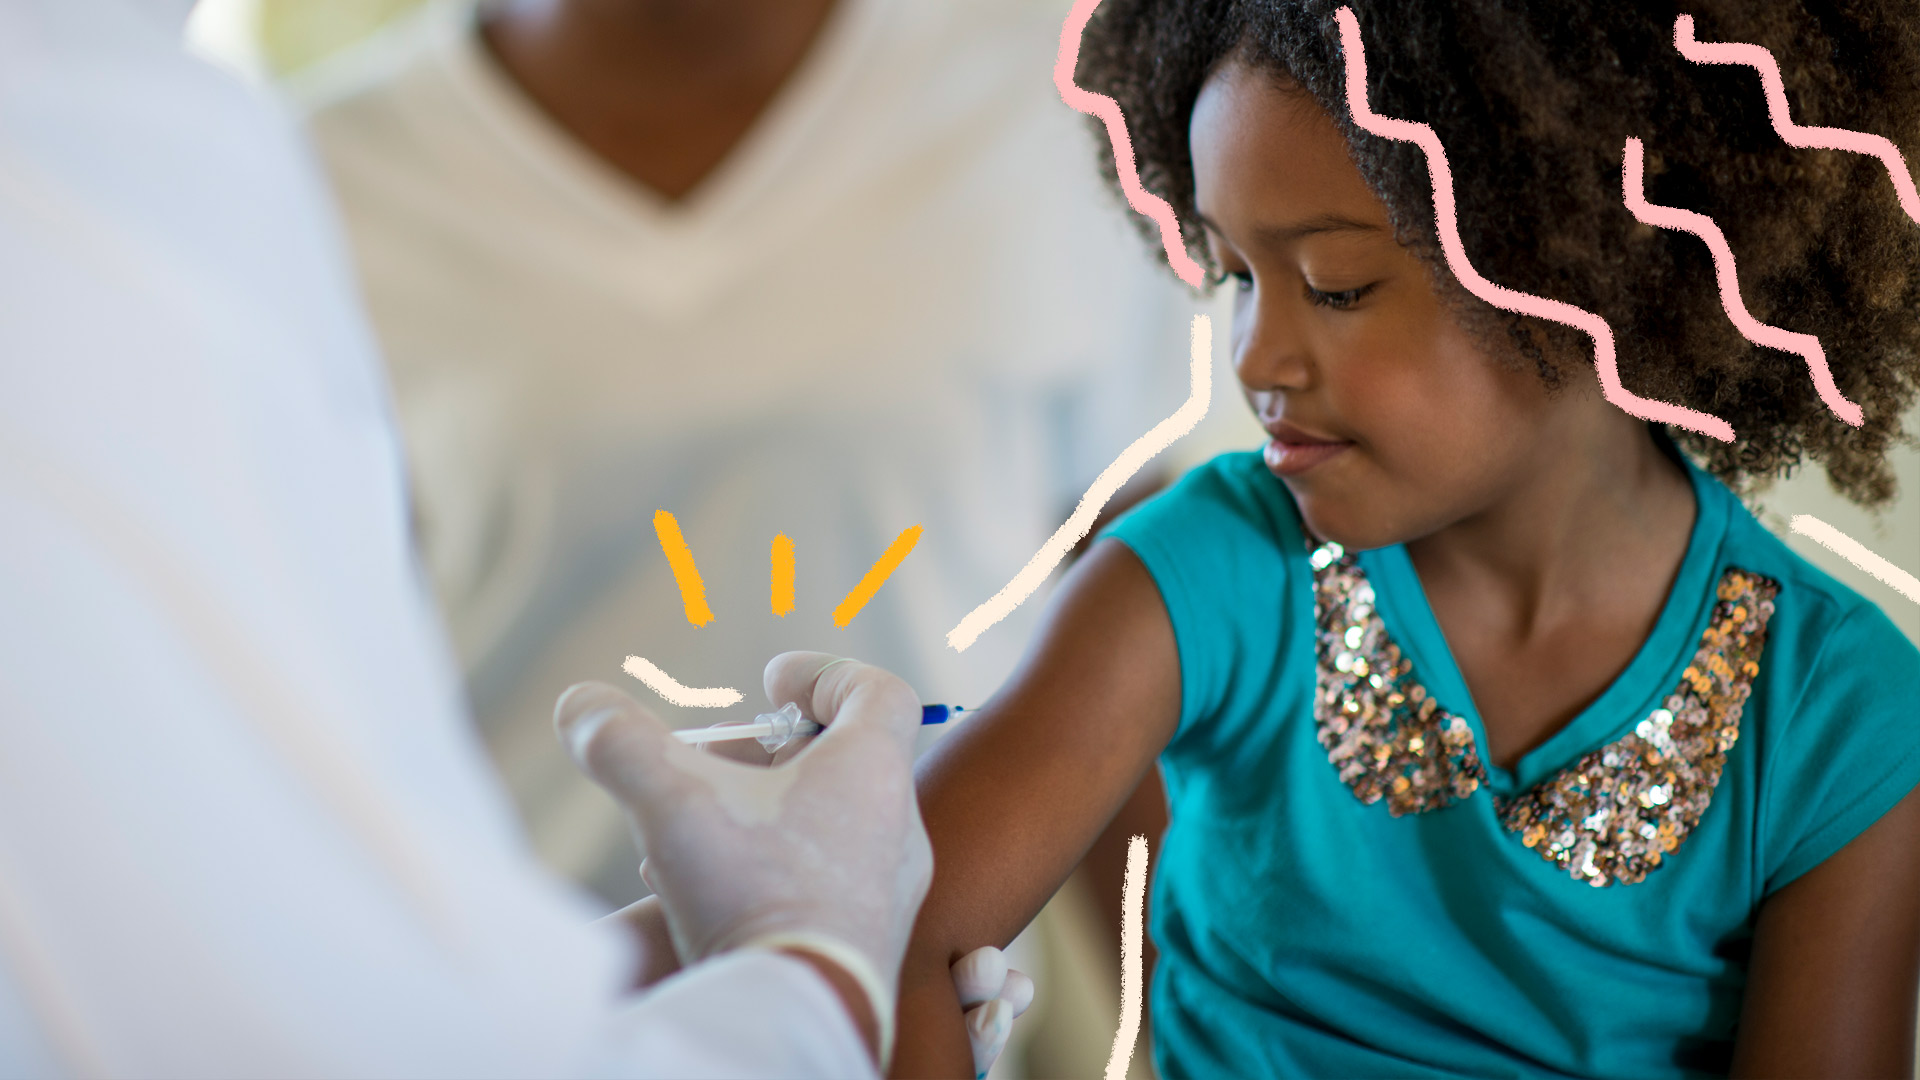 Imagem de uma criança negra olhando para seu braço. Uma mão segurando uma injeção está aplicando a vacina na menina